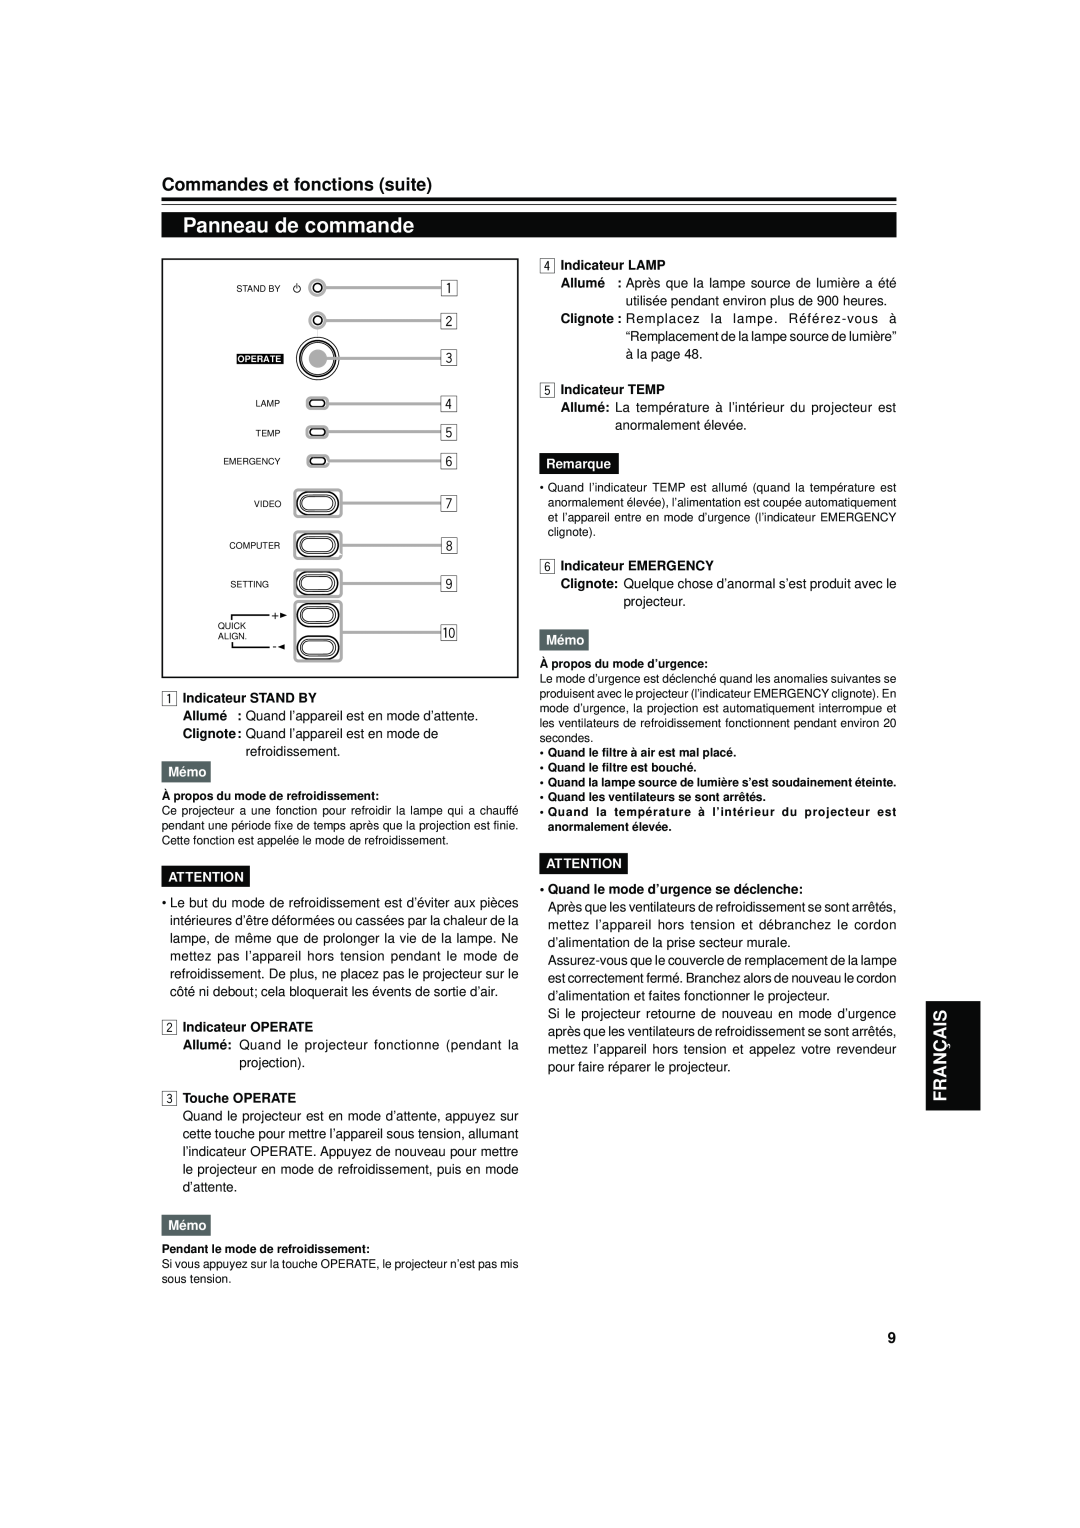 JVC DLA-S15U manual Panneau de commande, Commandes et fonctions suite, Français, Indicateur STAND BY, Mémo, Indicateur LAMP 